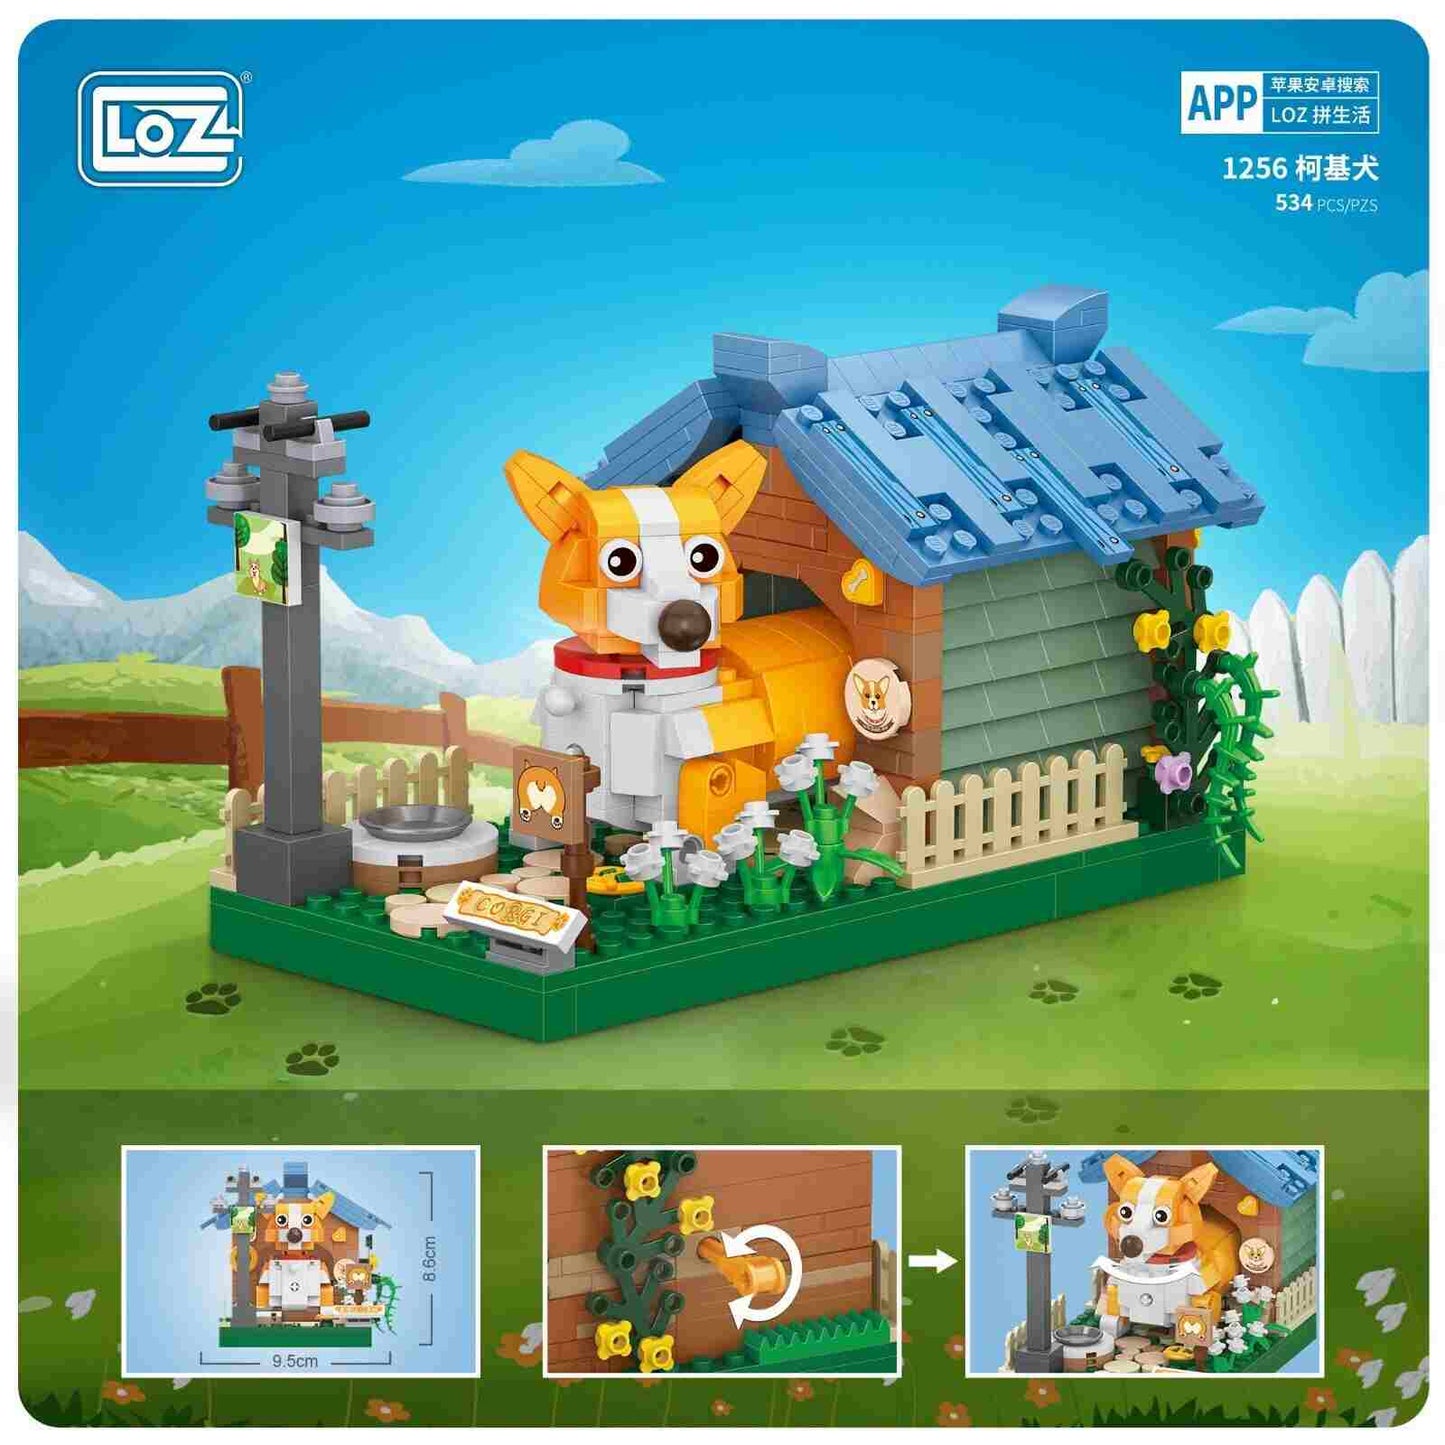 LOZ Mini Building Blocks Corgi (1256) Interlocking Blocks Toys Gifts